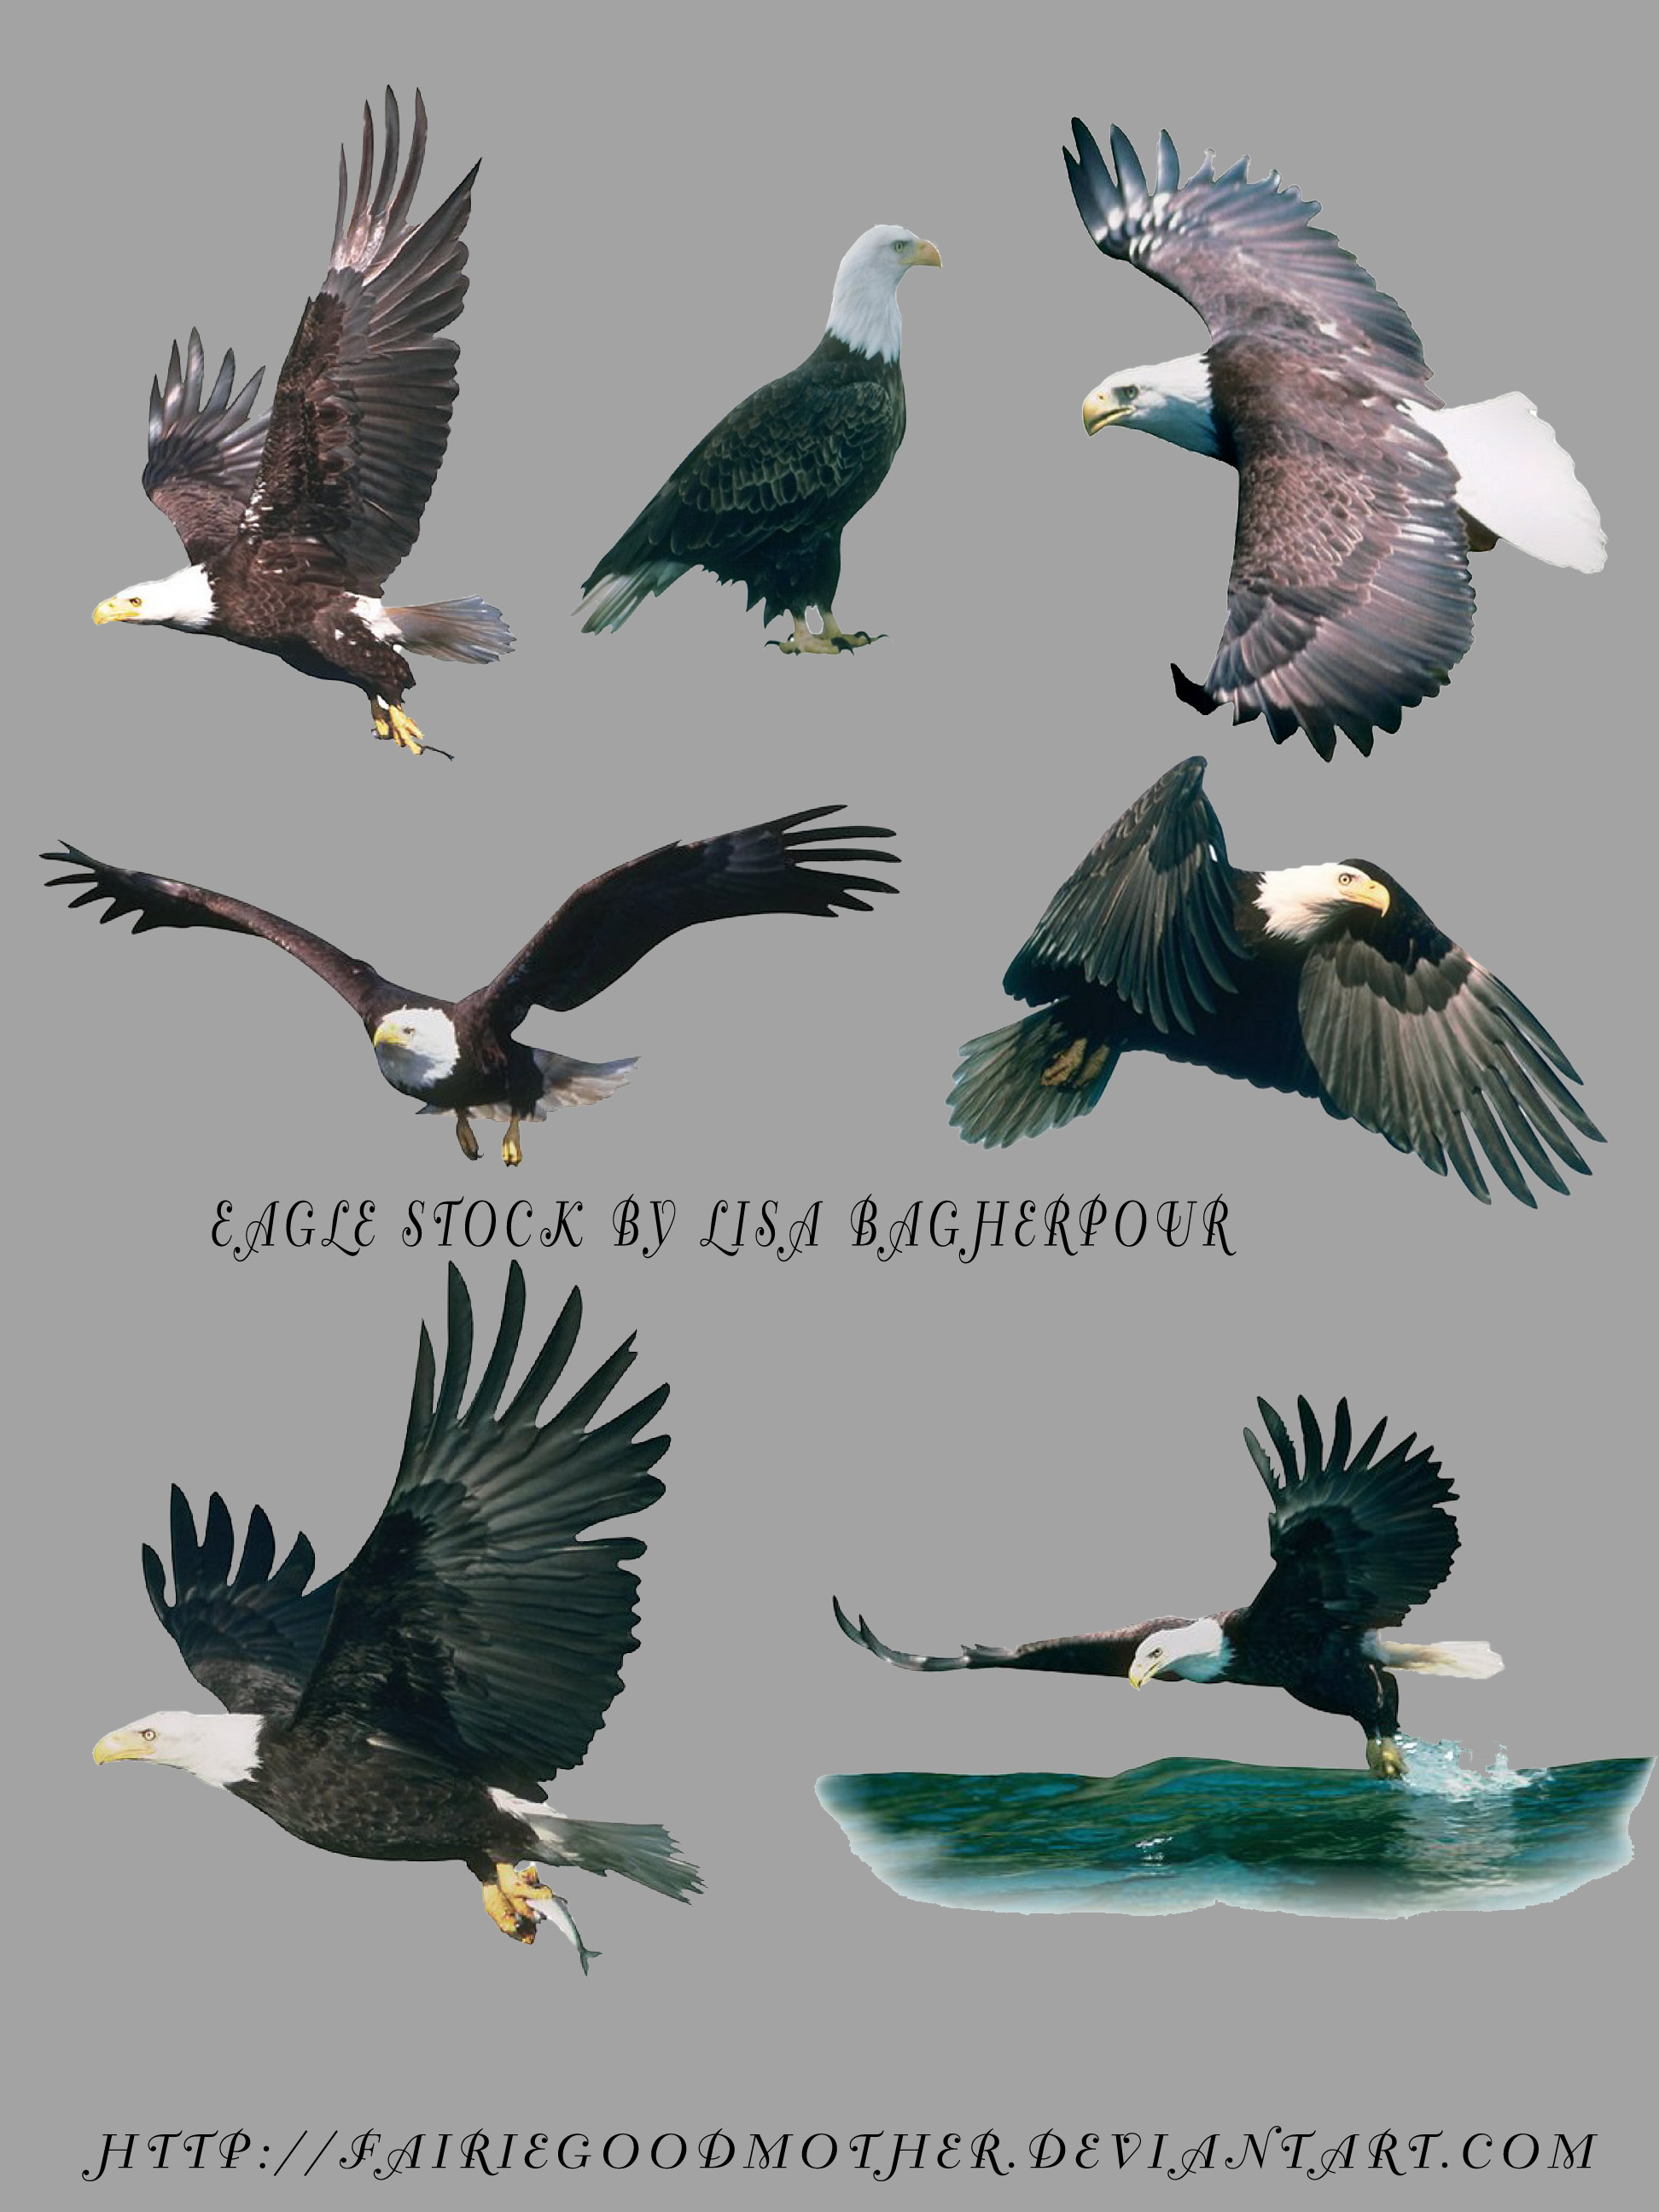 Flying Eagles